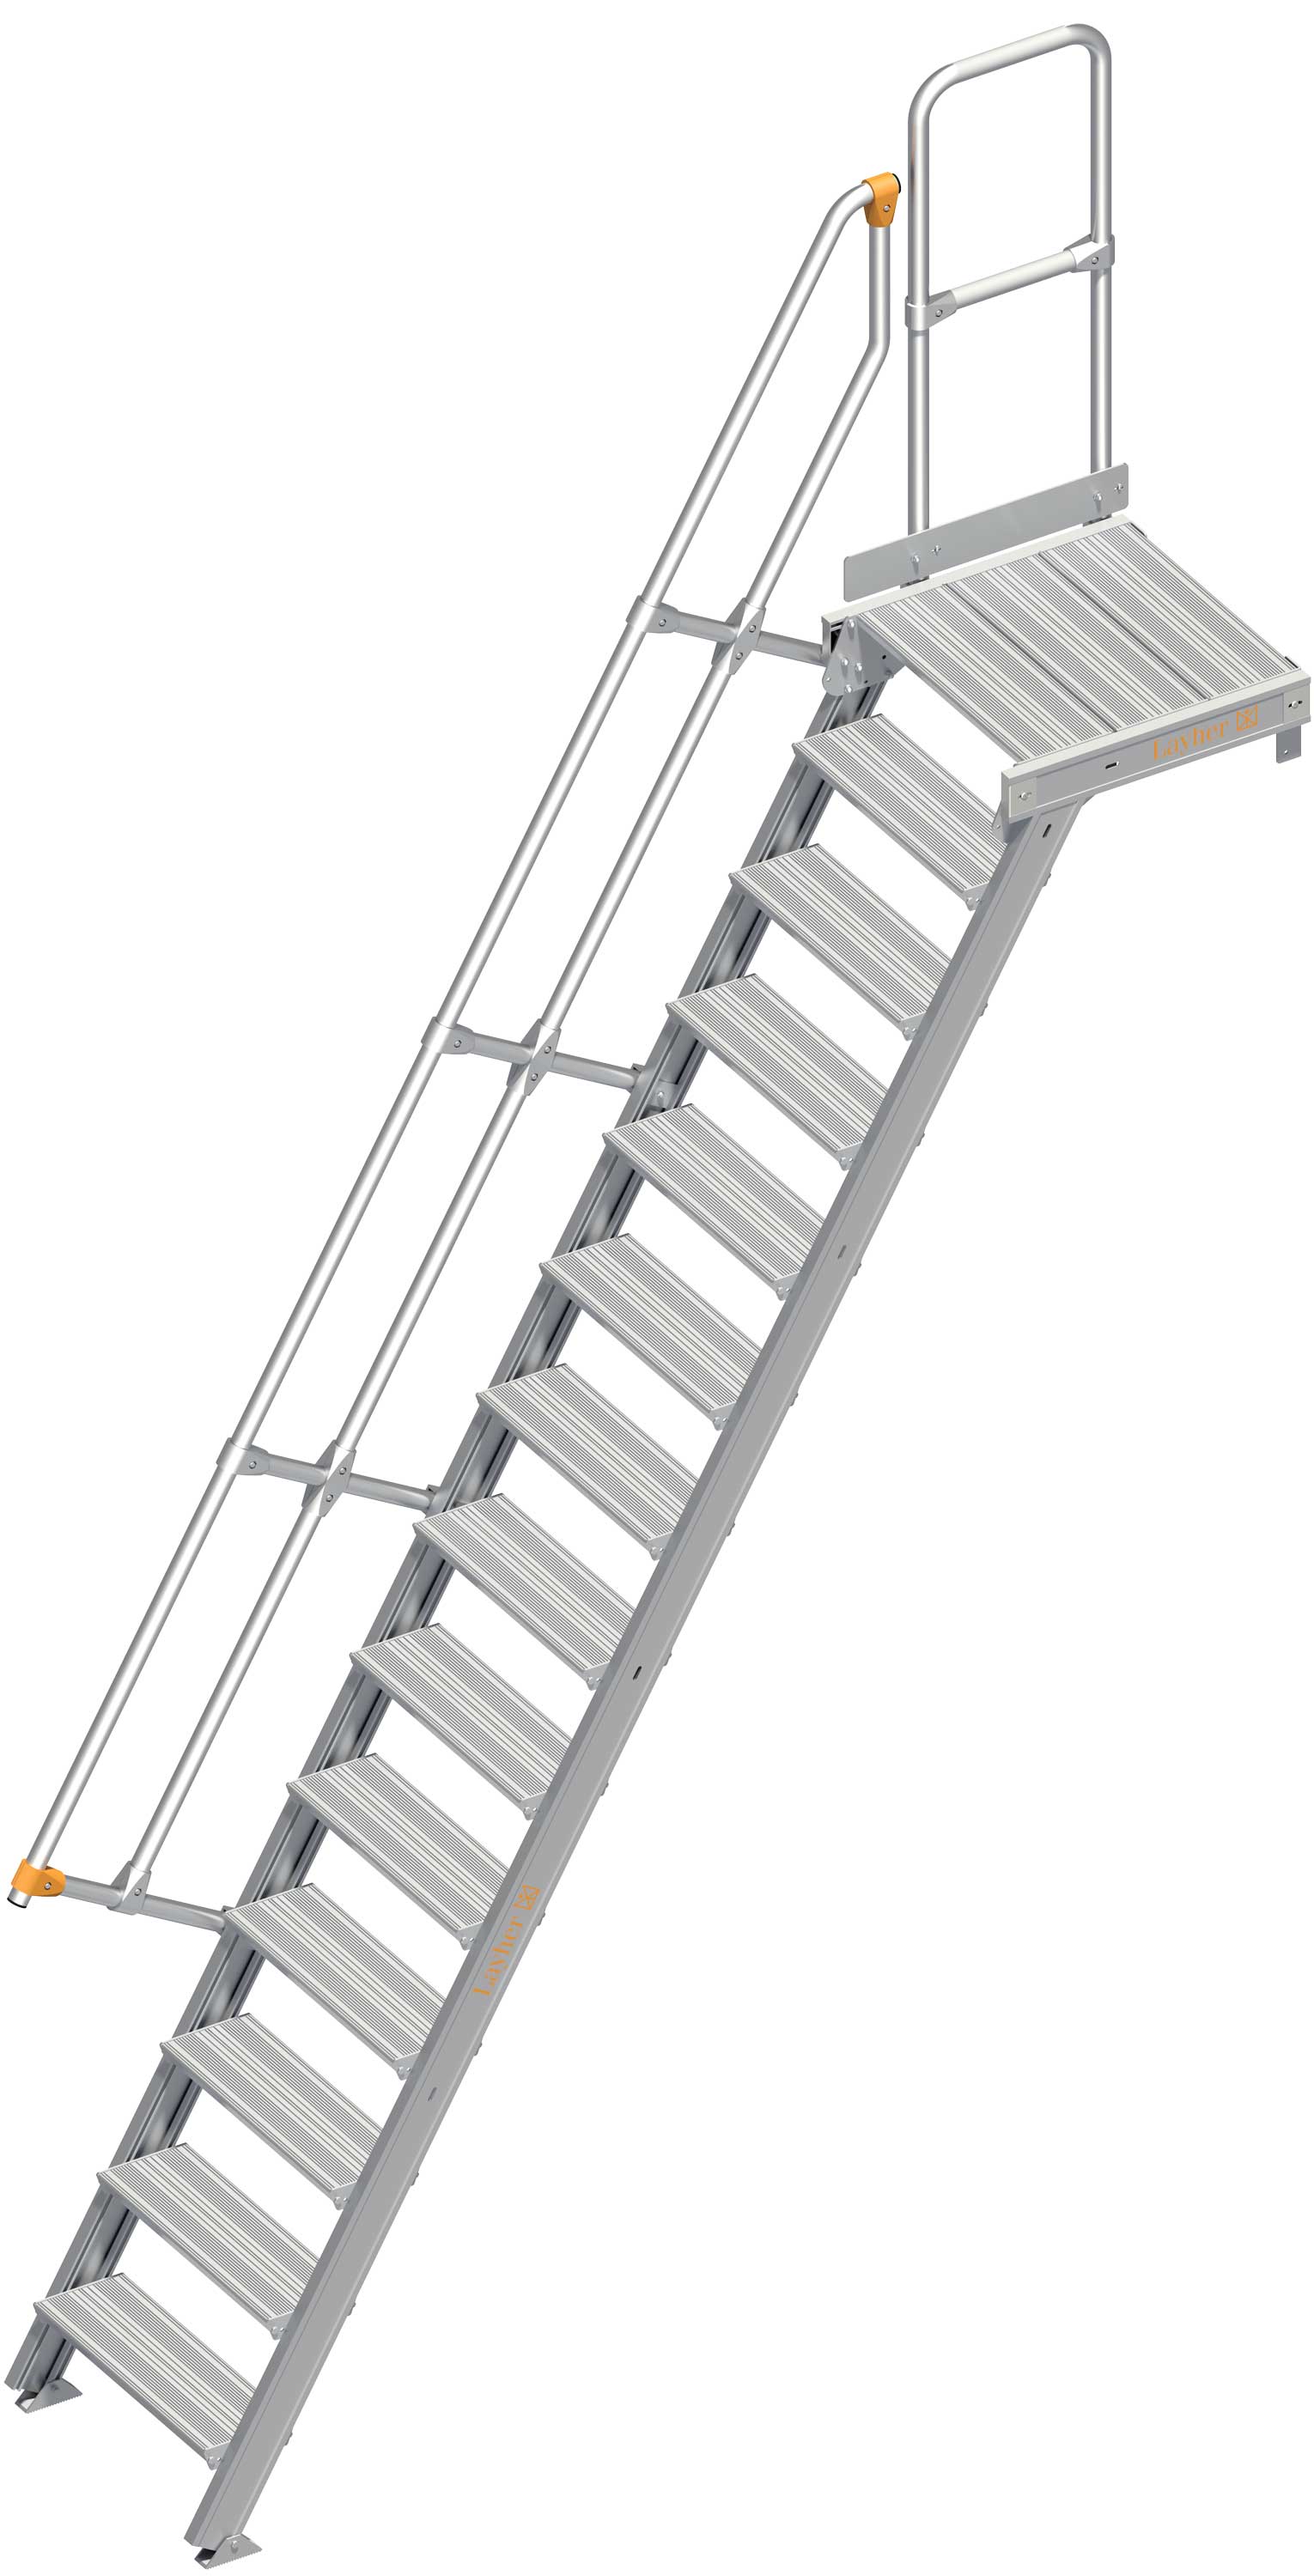 Layher Plattformtreppe 60° SG 14 Stufen - 600 mm breit